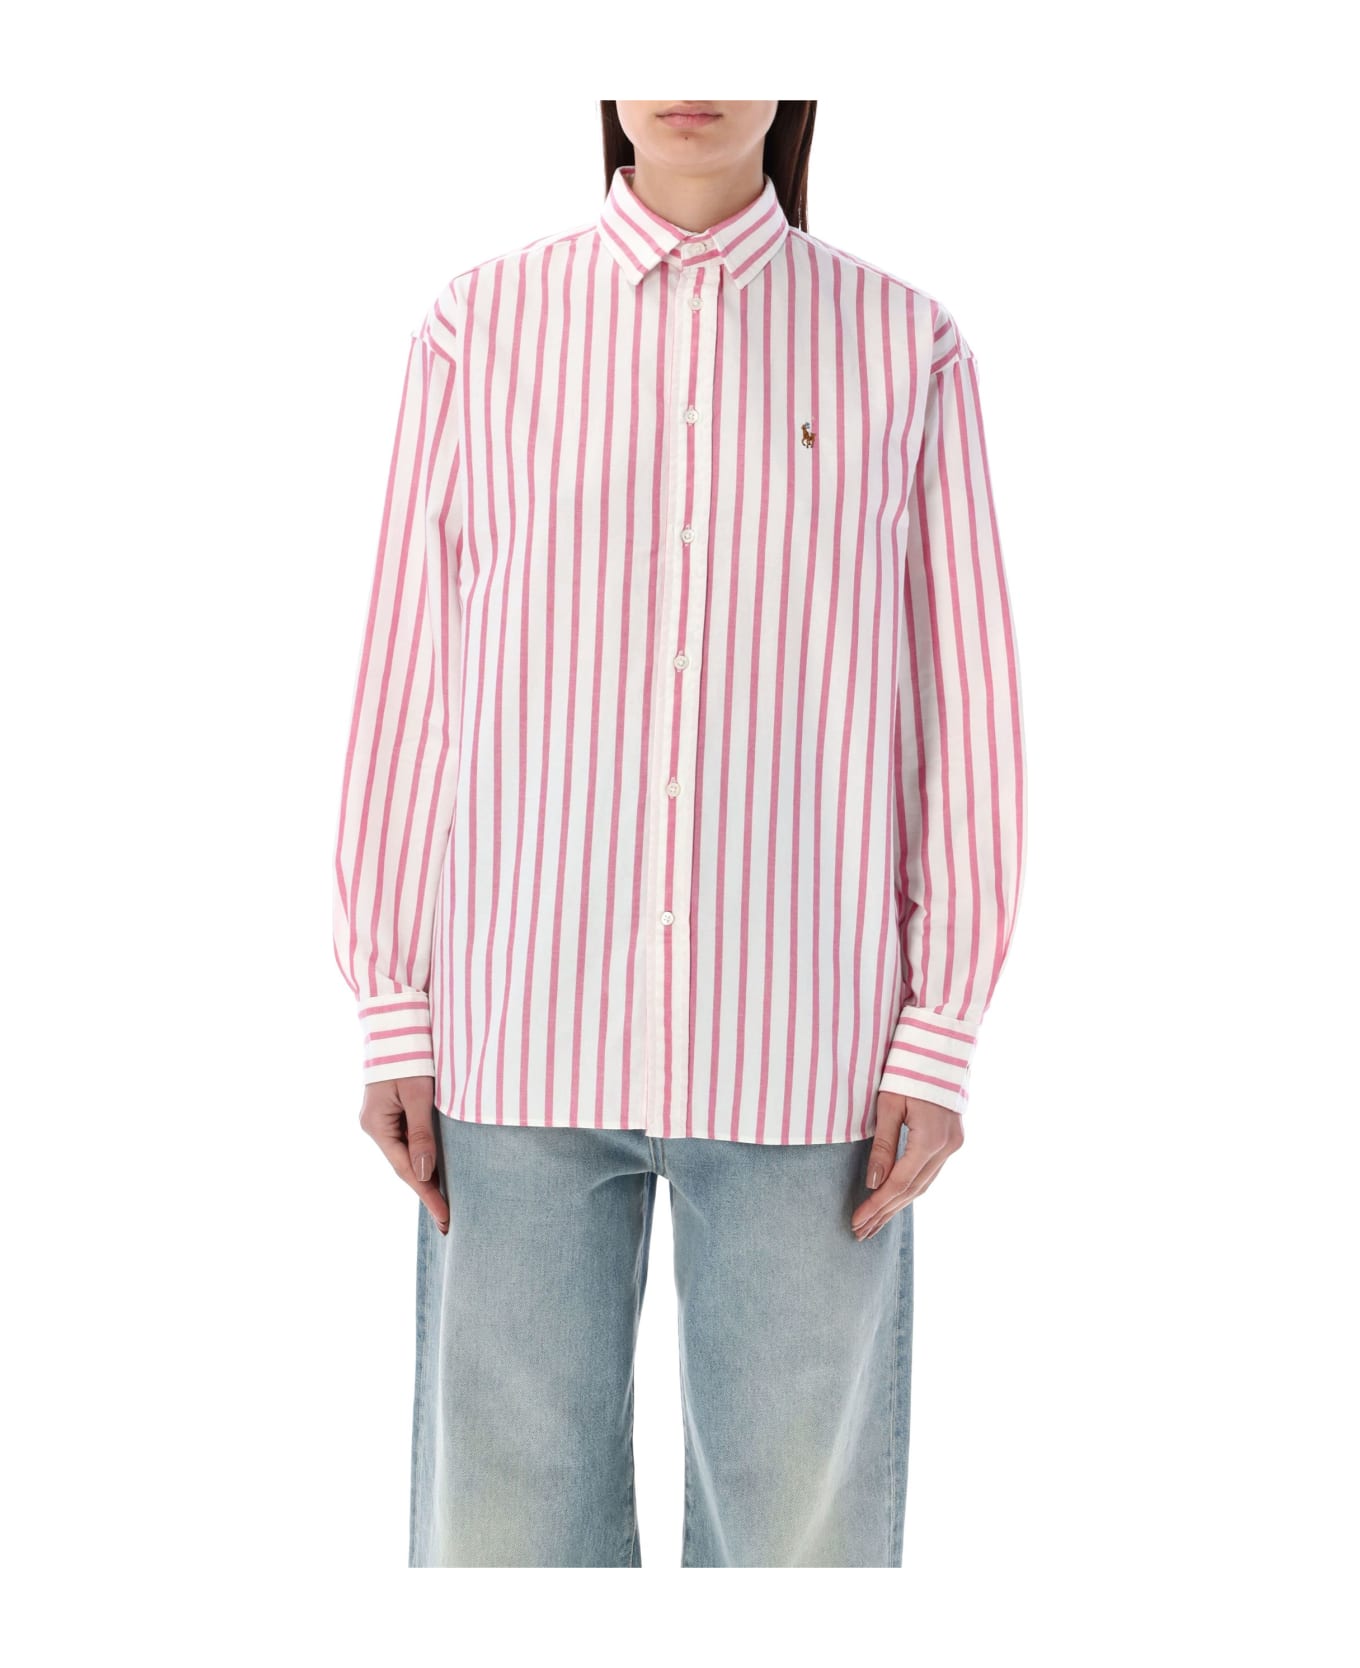 Polo Ralph Lauren Striped Oxford Shirt - PINK/WHITE STRIPES